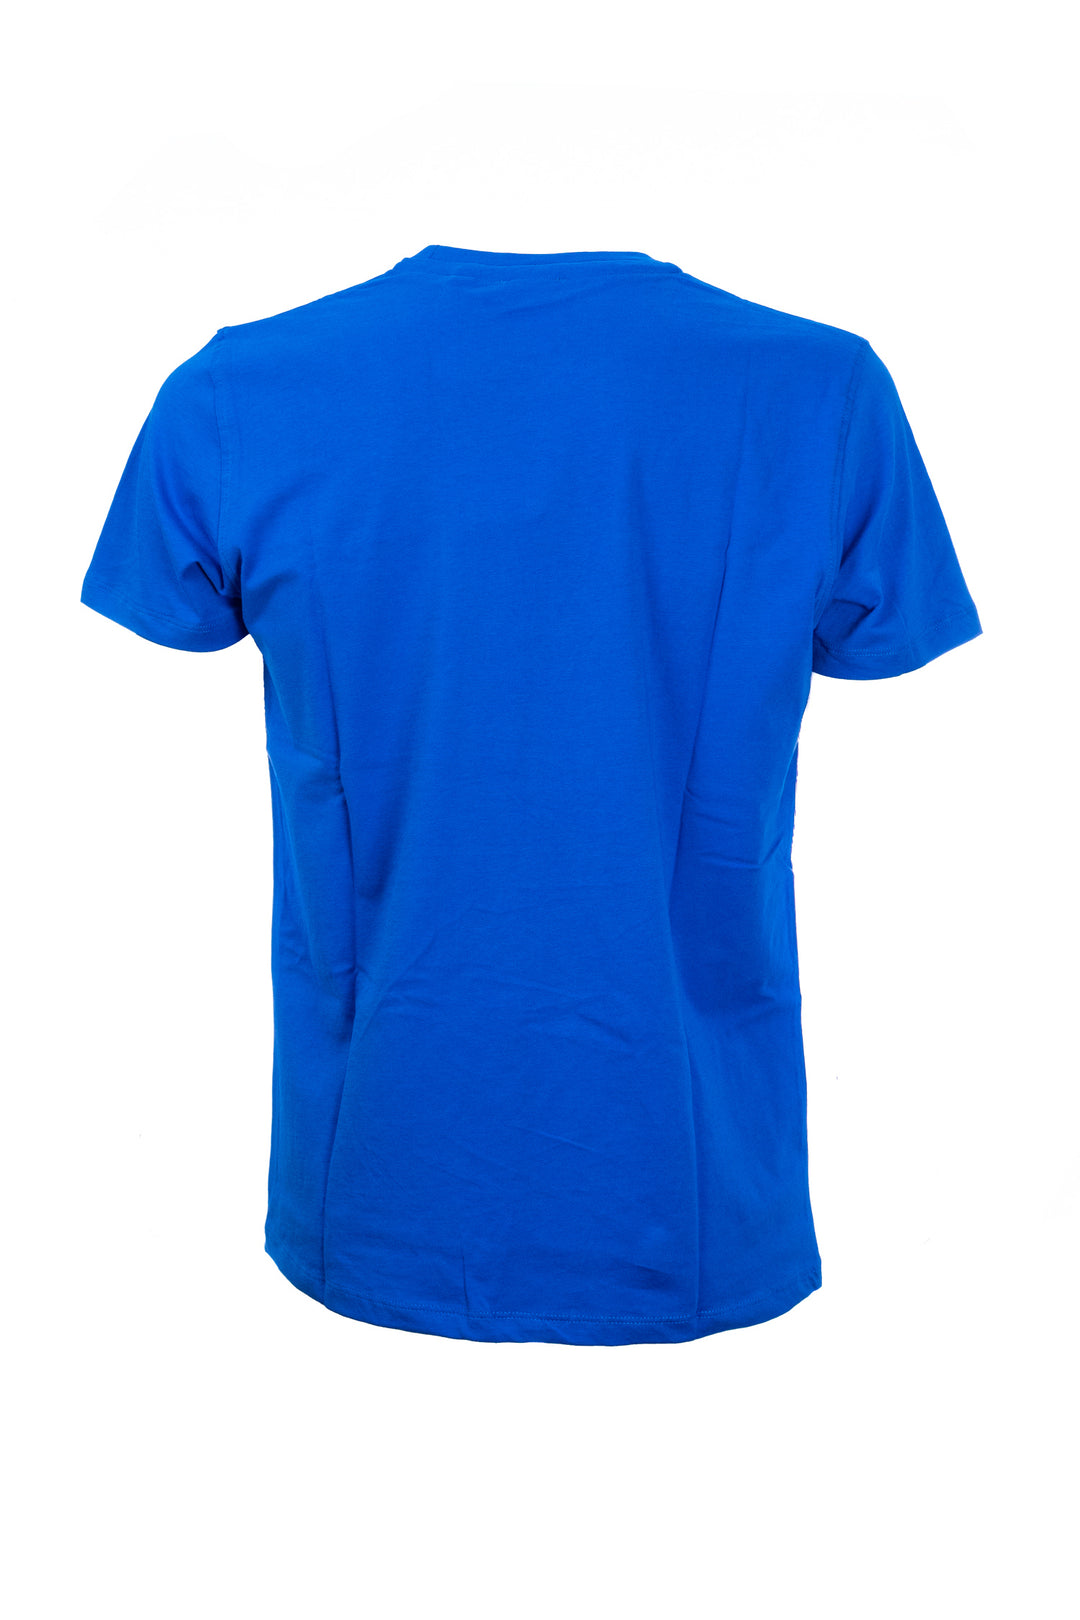 U.S. POLO ASSN. T-shirt blu in cotone con logo ricamato sul petto - Mancinelli 1954